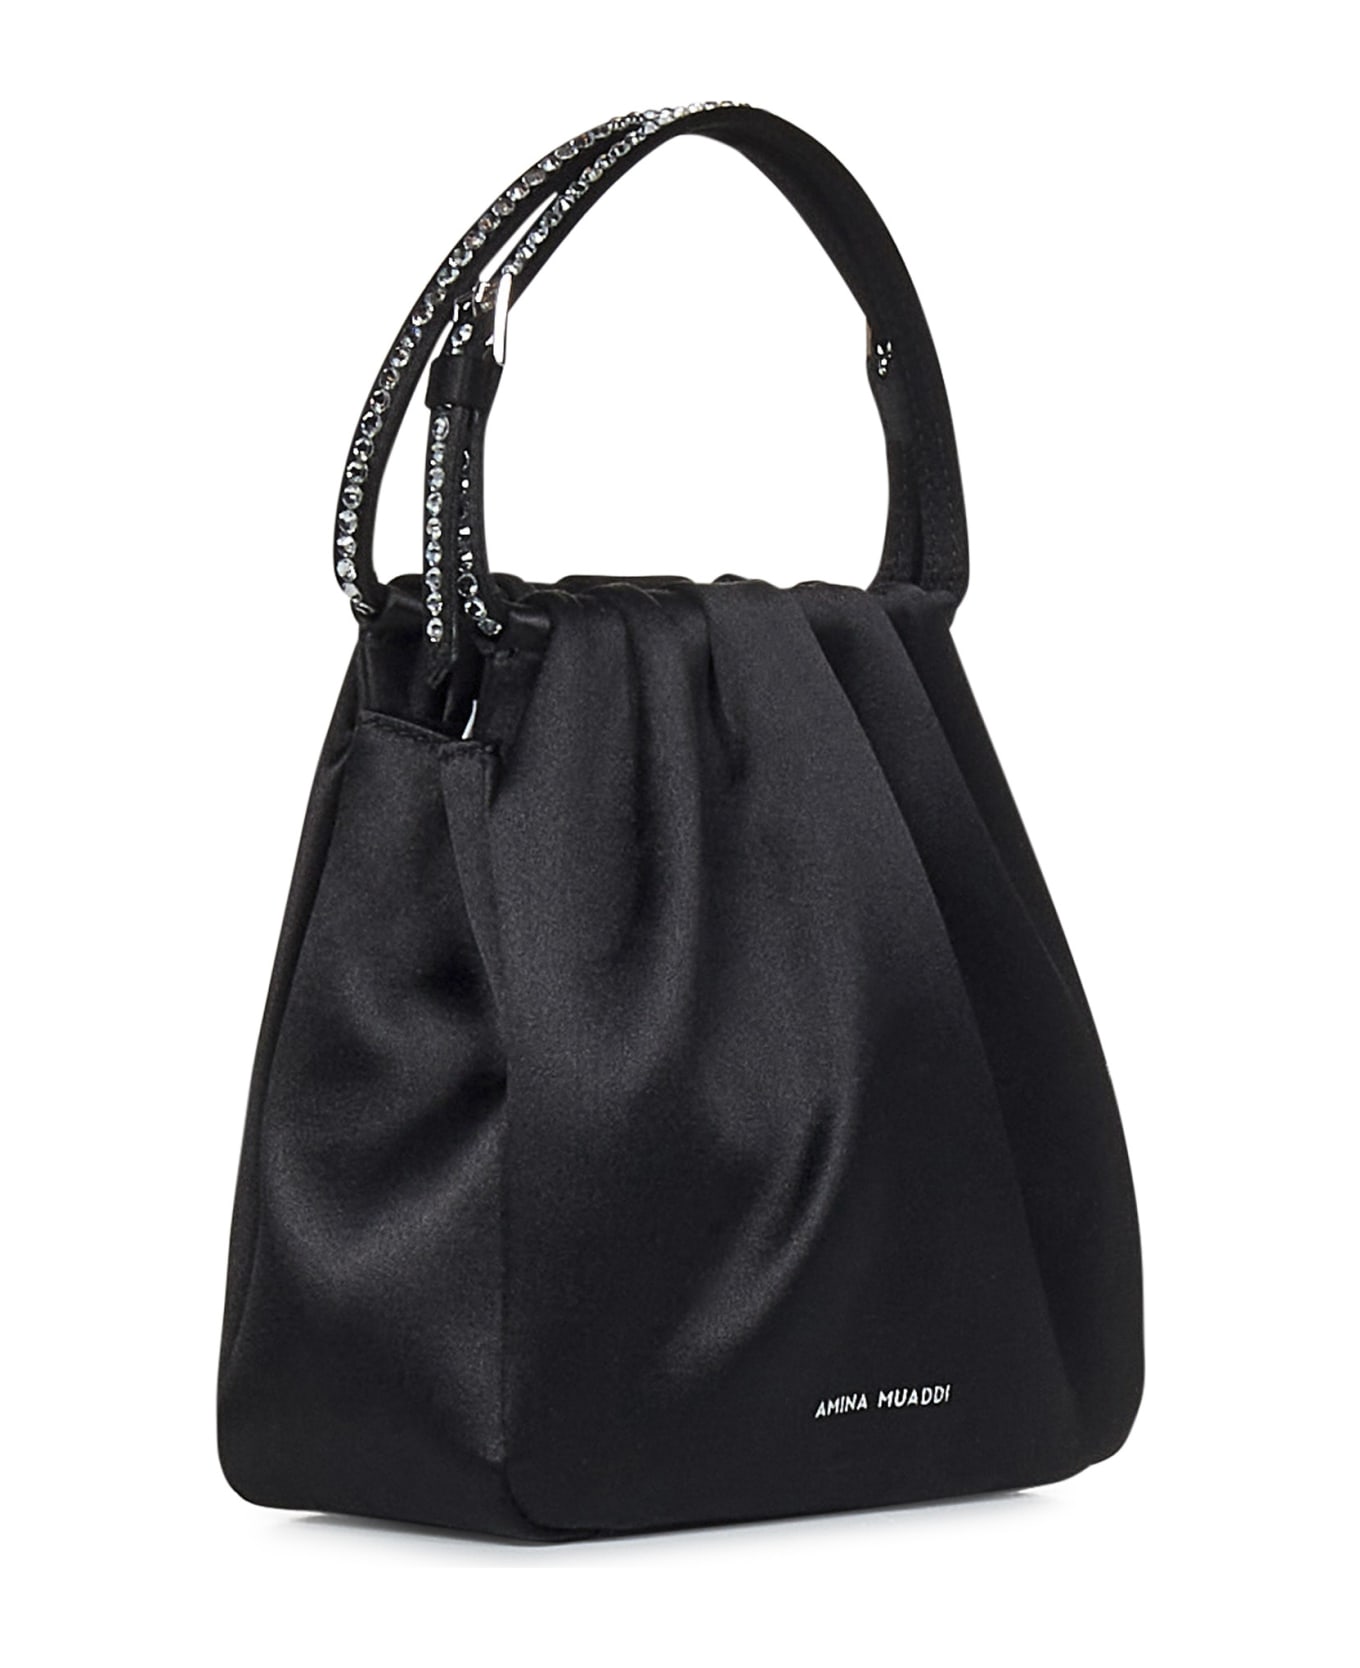 Amina Muaddi Vittoria Crystal Handbag - Black